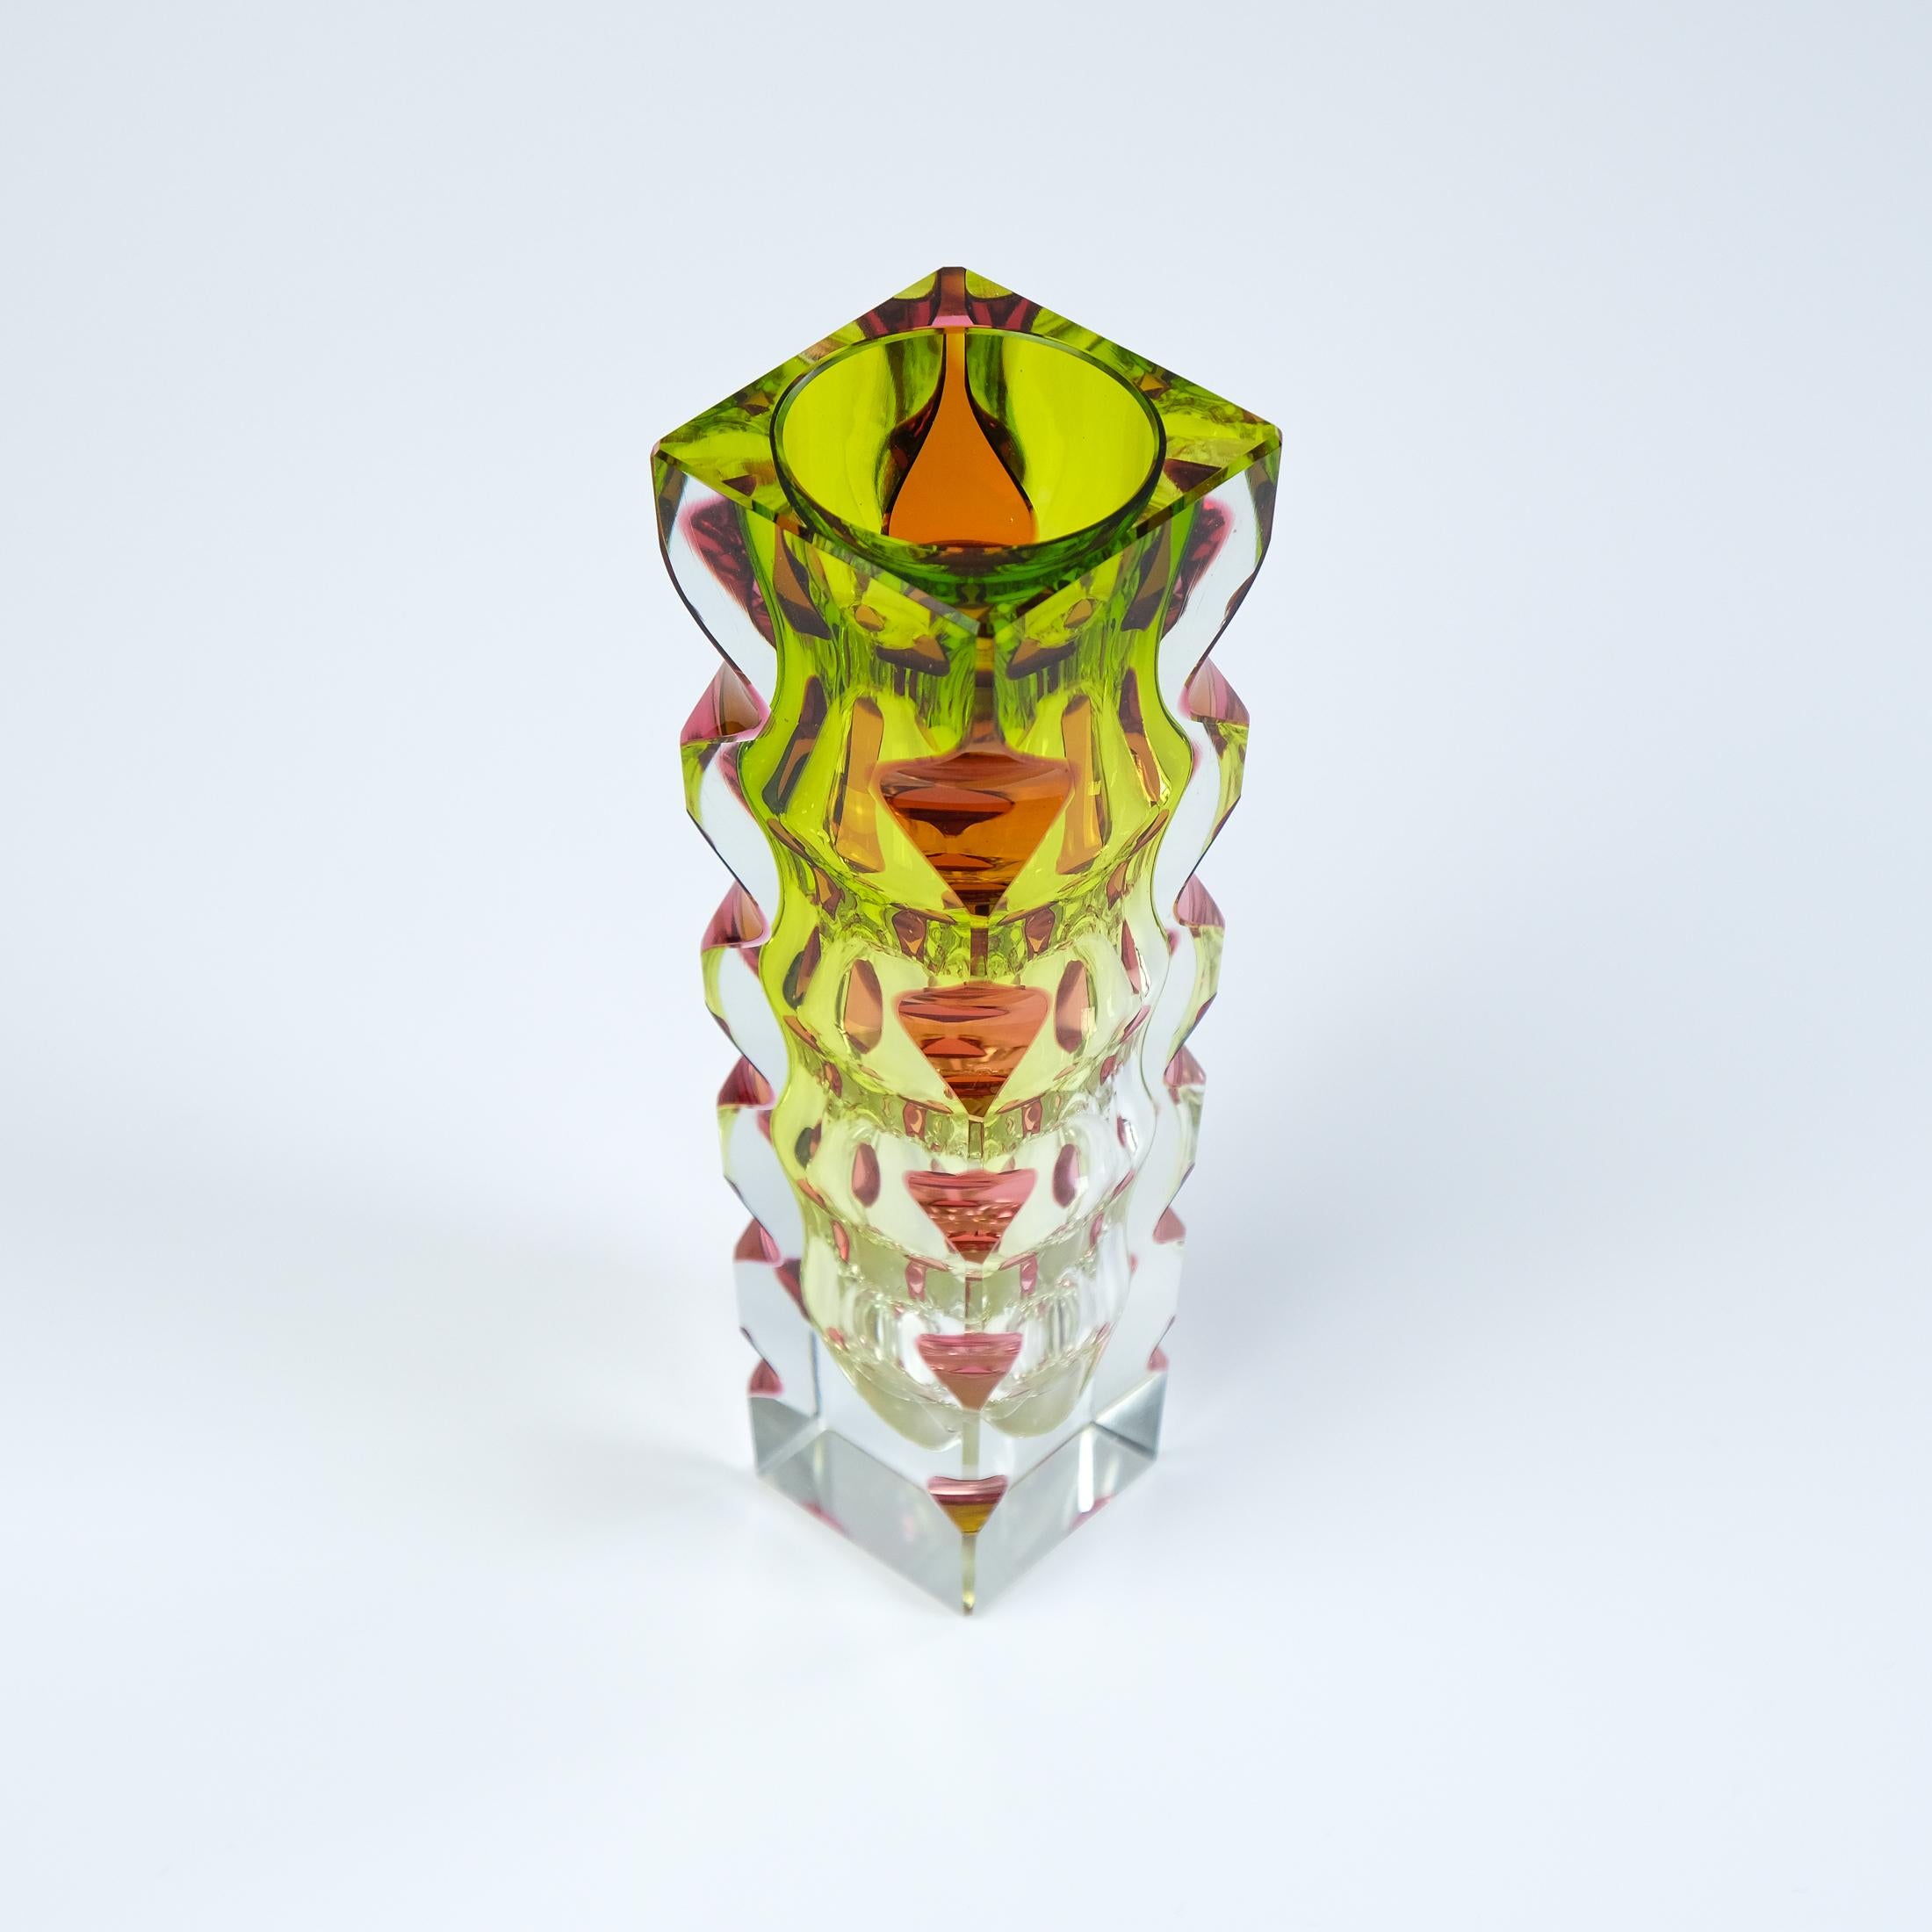 Nous vous proposons un vase bohémien du milieu du siècle en trois couleurs, taillé et poli, conçu par le célèbre artiste verrier tchèque Oldrich Lipsky vers 1964 pour la fonderie de verre Novy Bor (Exbor). 

Le vase, qui est composé de verre rose,